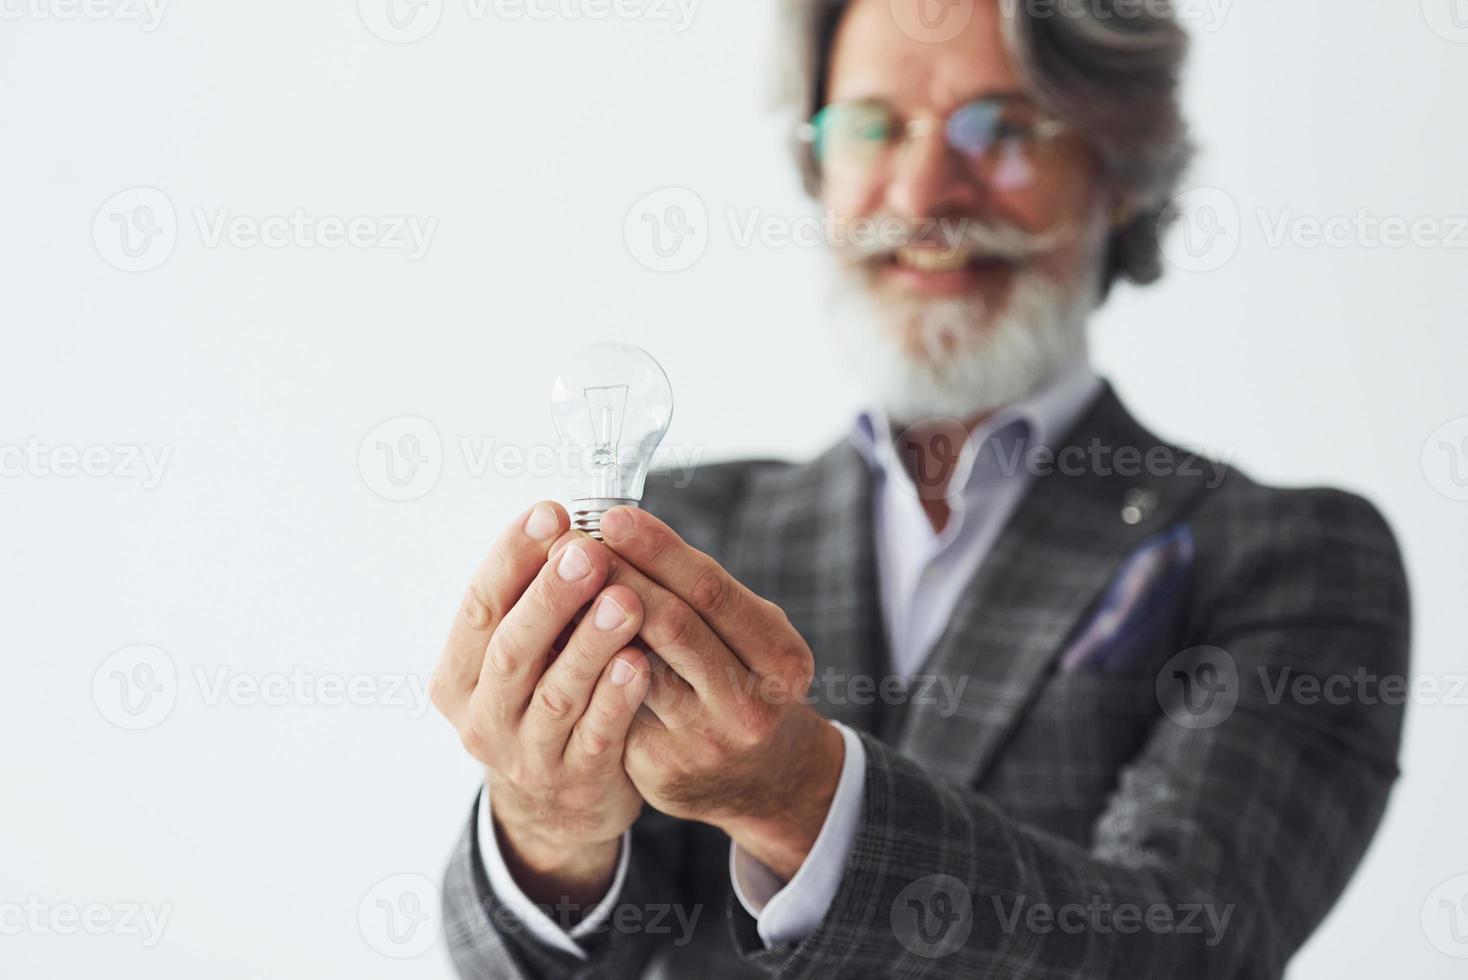 posando para uma câmera em pé contra um fundo branco. homem moderno elegante sênior com cabelos grisalhos e barba dentro de casa foto